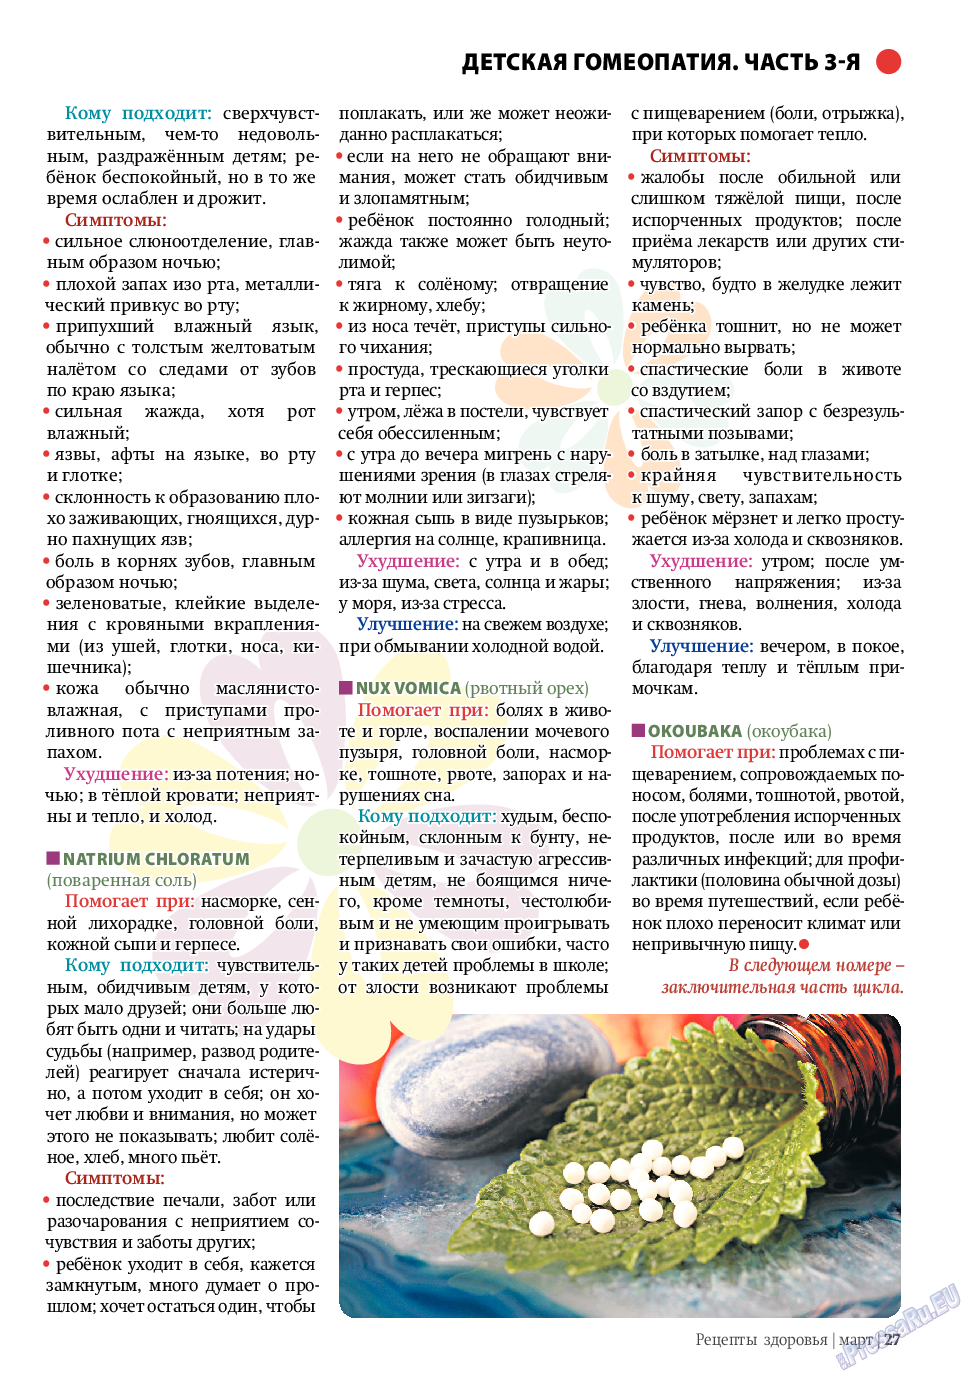 Рецепты здоровья (журнал). 2011 год, номер 3, стр. 27